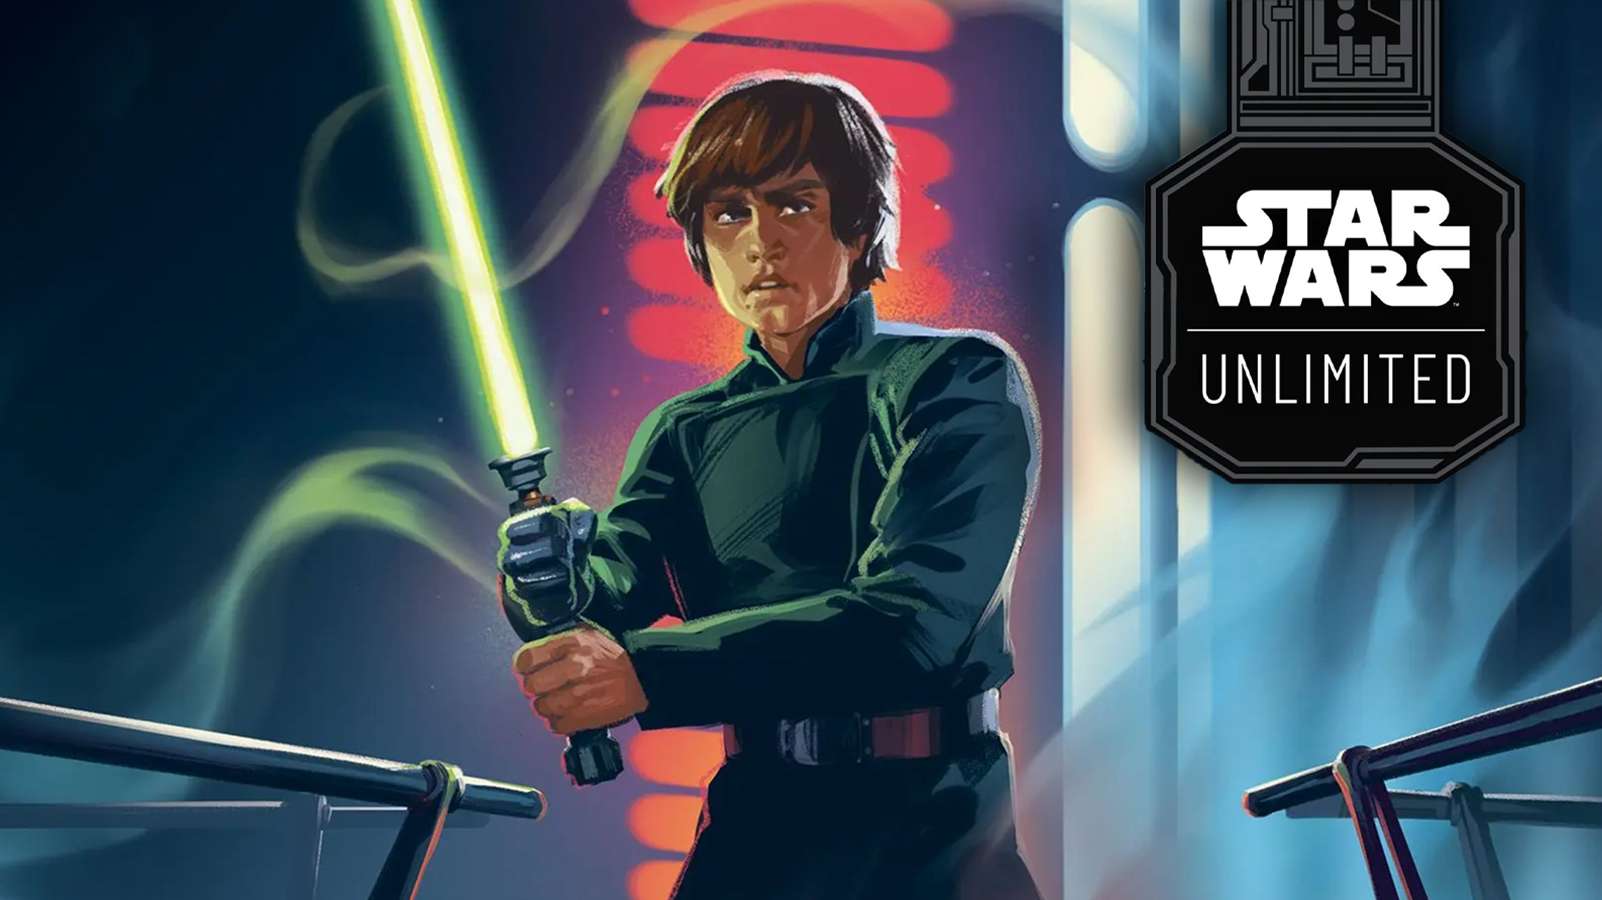 Star Wars Unlimited Luke Skywalker sanat eseri